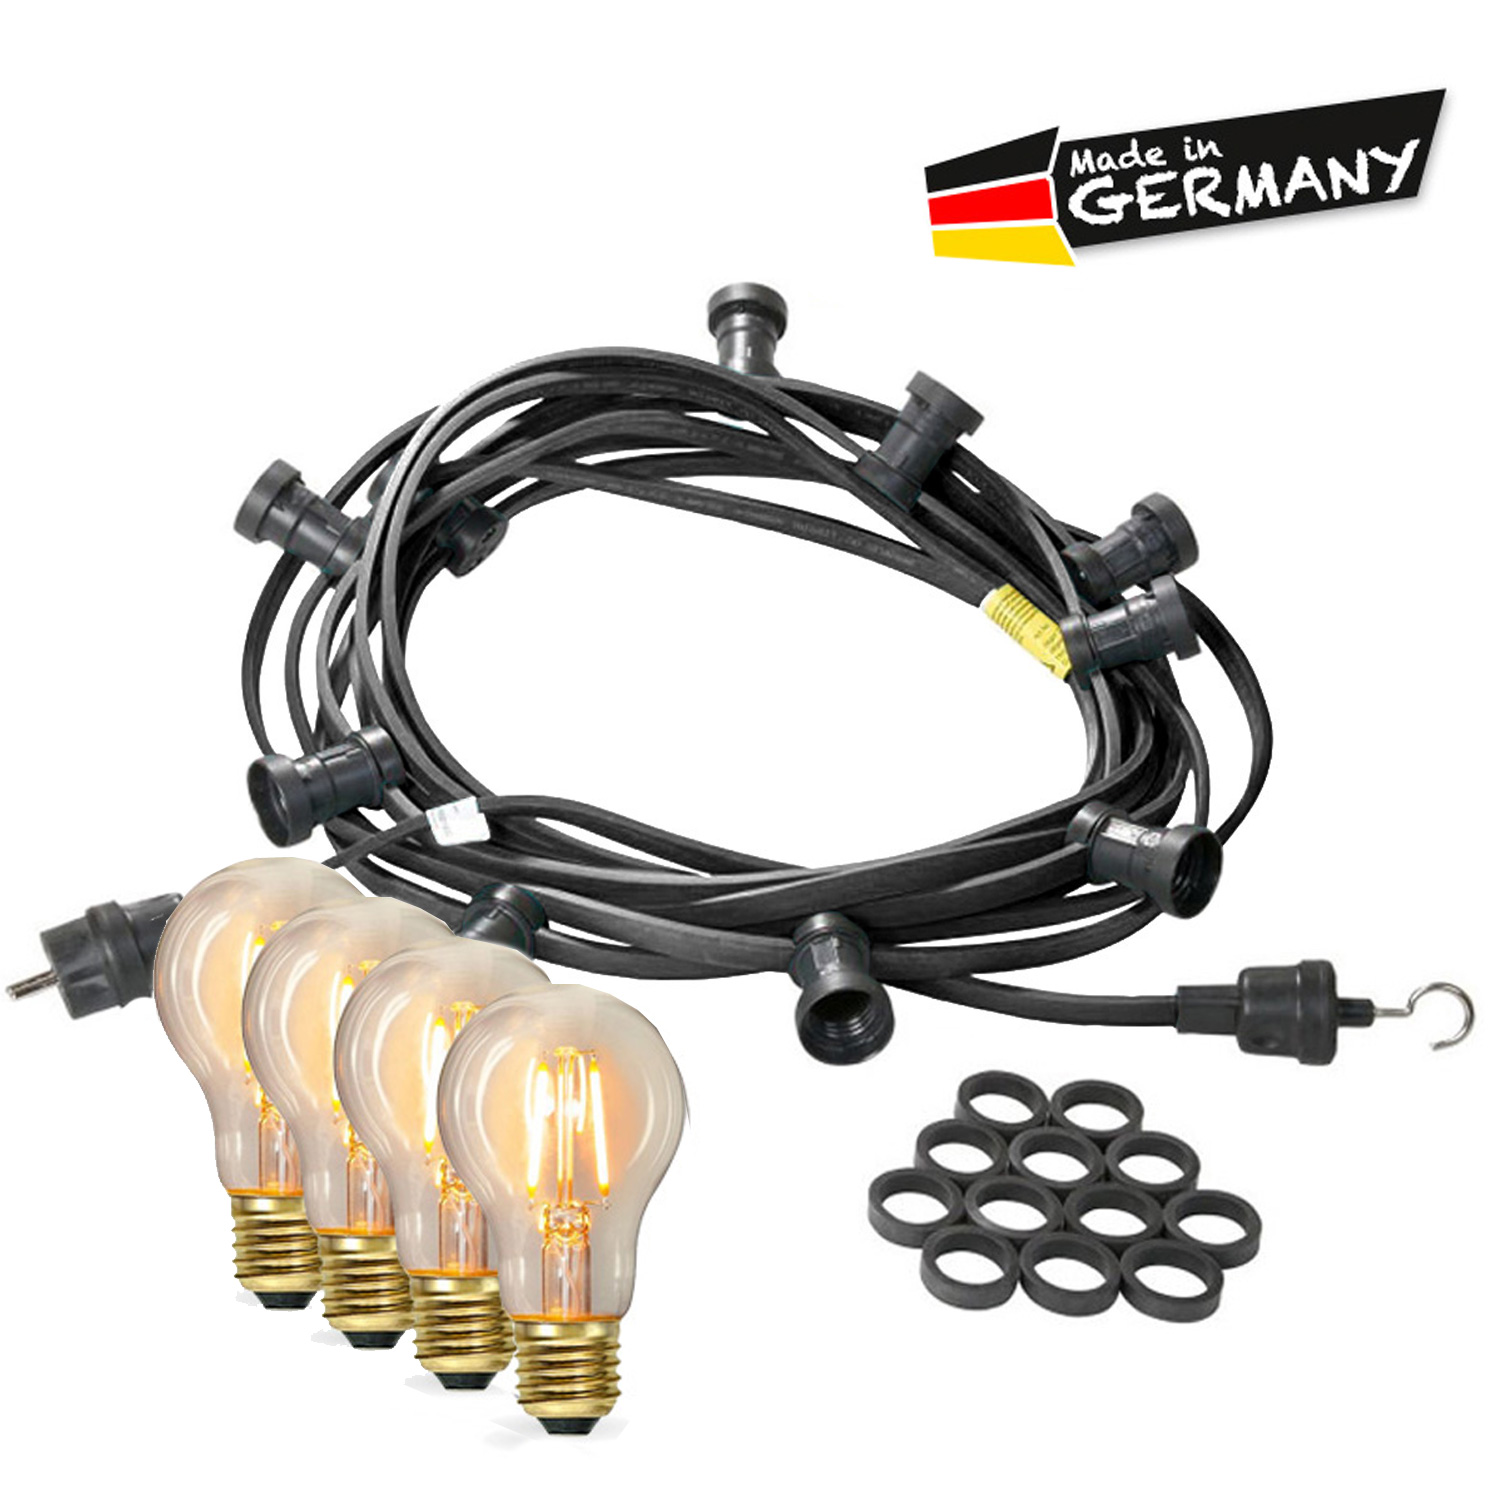 Illu-/Partylichterkette 10m - Außenlichterkette - Made in Germany - 30 x Edison LED Filamentlampen